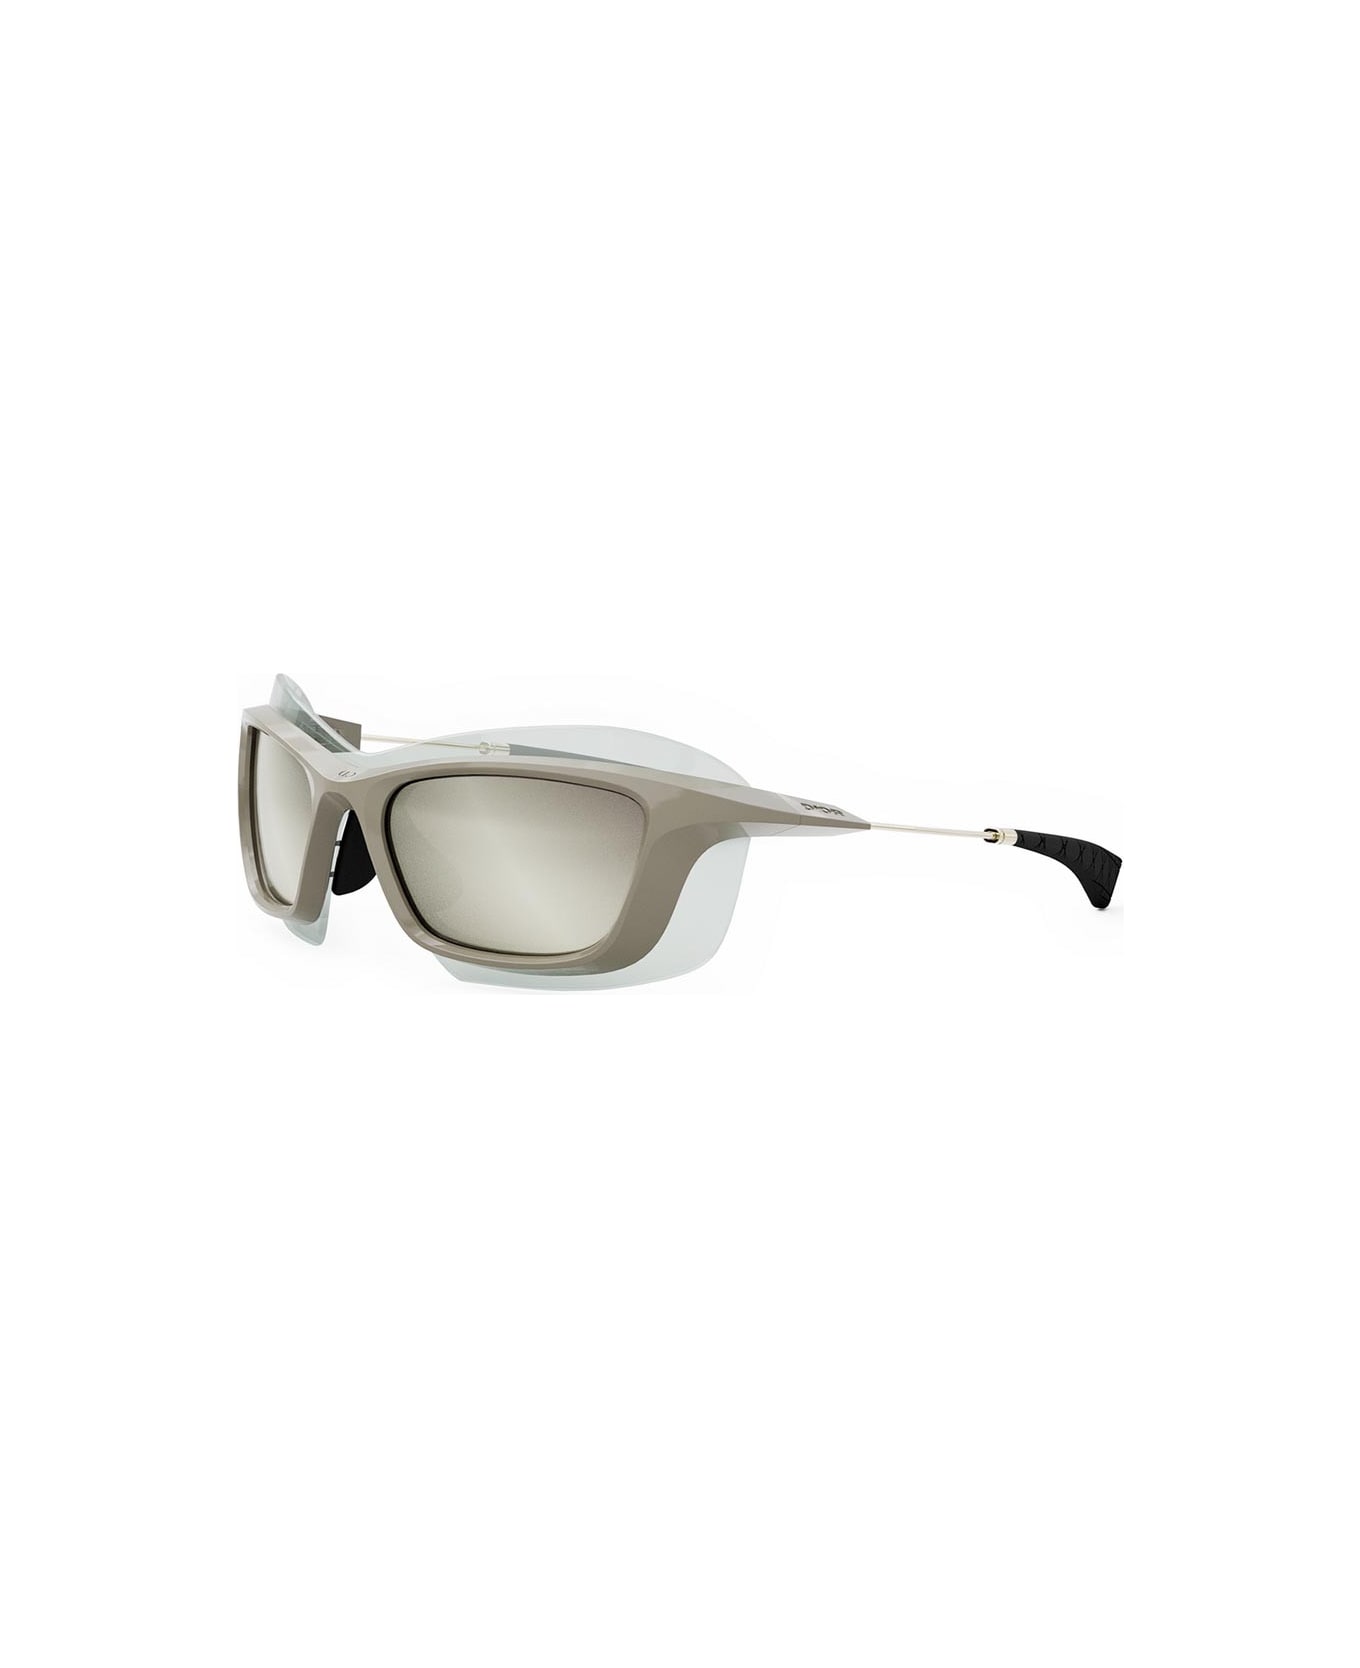 Dior Eyewear Sunglasses - Marrone lucido/Specchiato silver サングラス